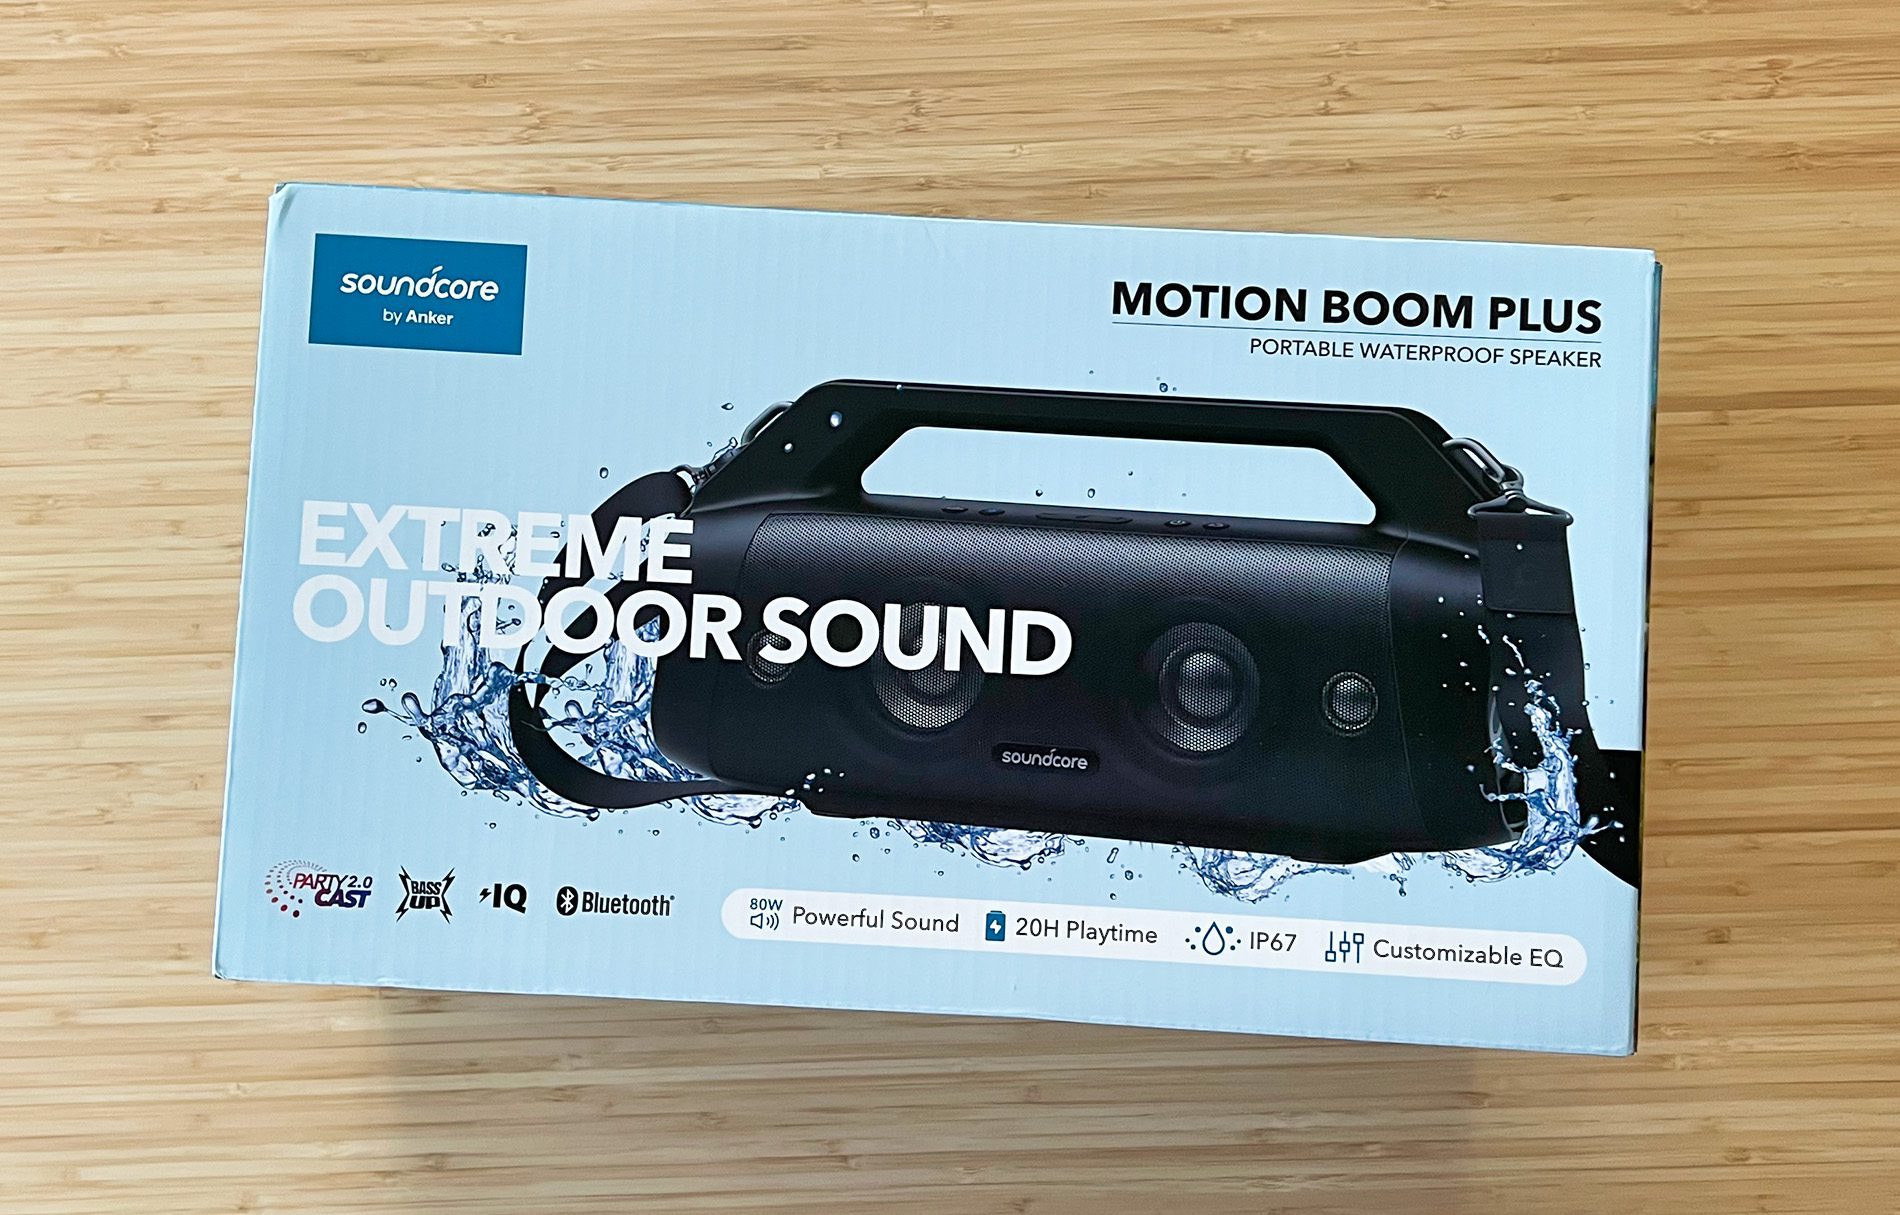 Der Soundcore Motion Boom Plus ist ein Bluetooth-Lautsprecher, welcher durch die IP67-Schutzklasse besonders für die Nutzung im Außenbereich gedacht ist (Fotos: Sir Apfelot).